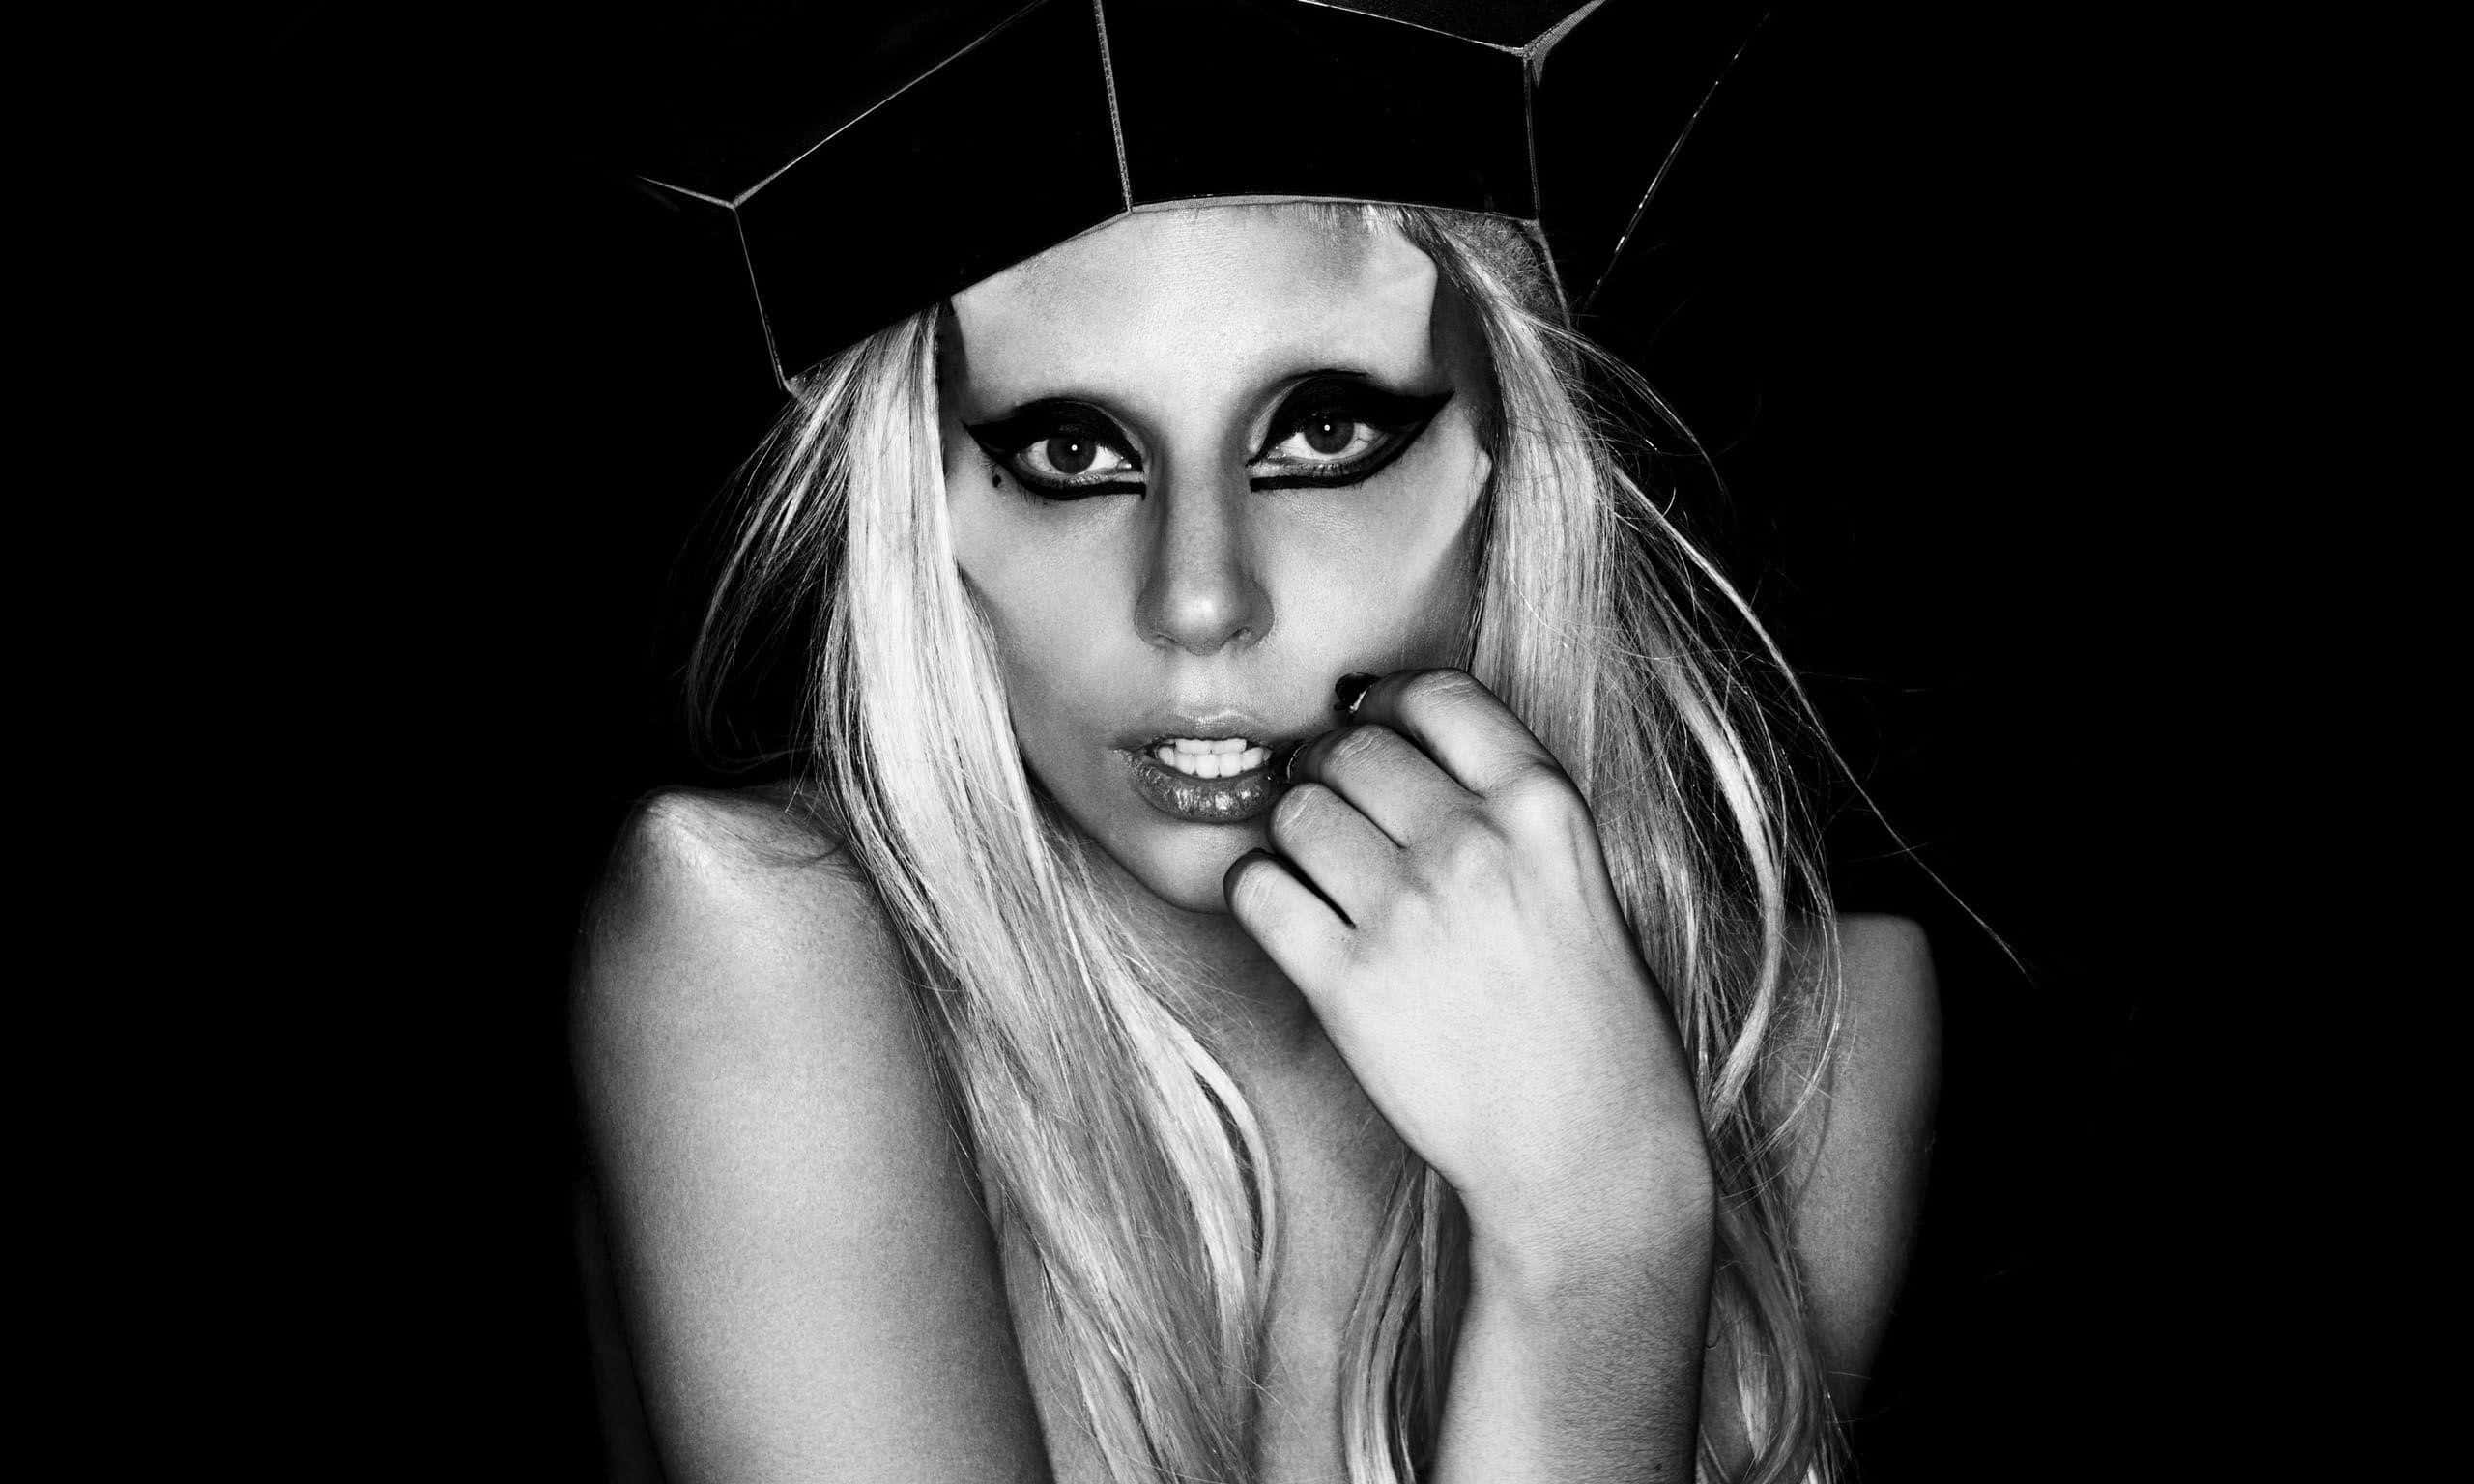 Laurie Leal on Lady Gaga Lady gaga  Lady gaga HD phone wallpaper  Pxfuel